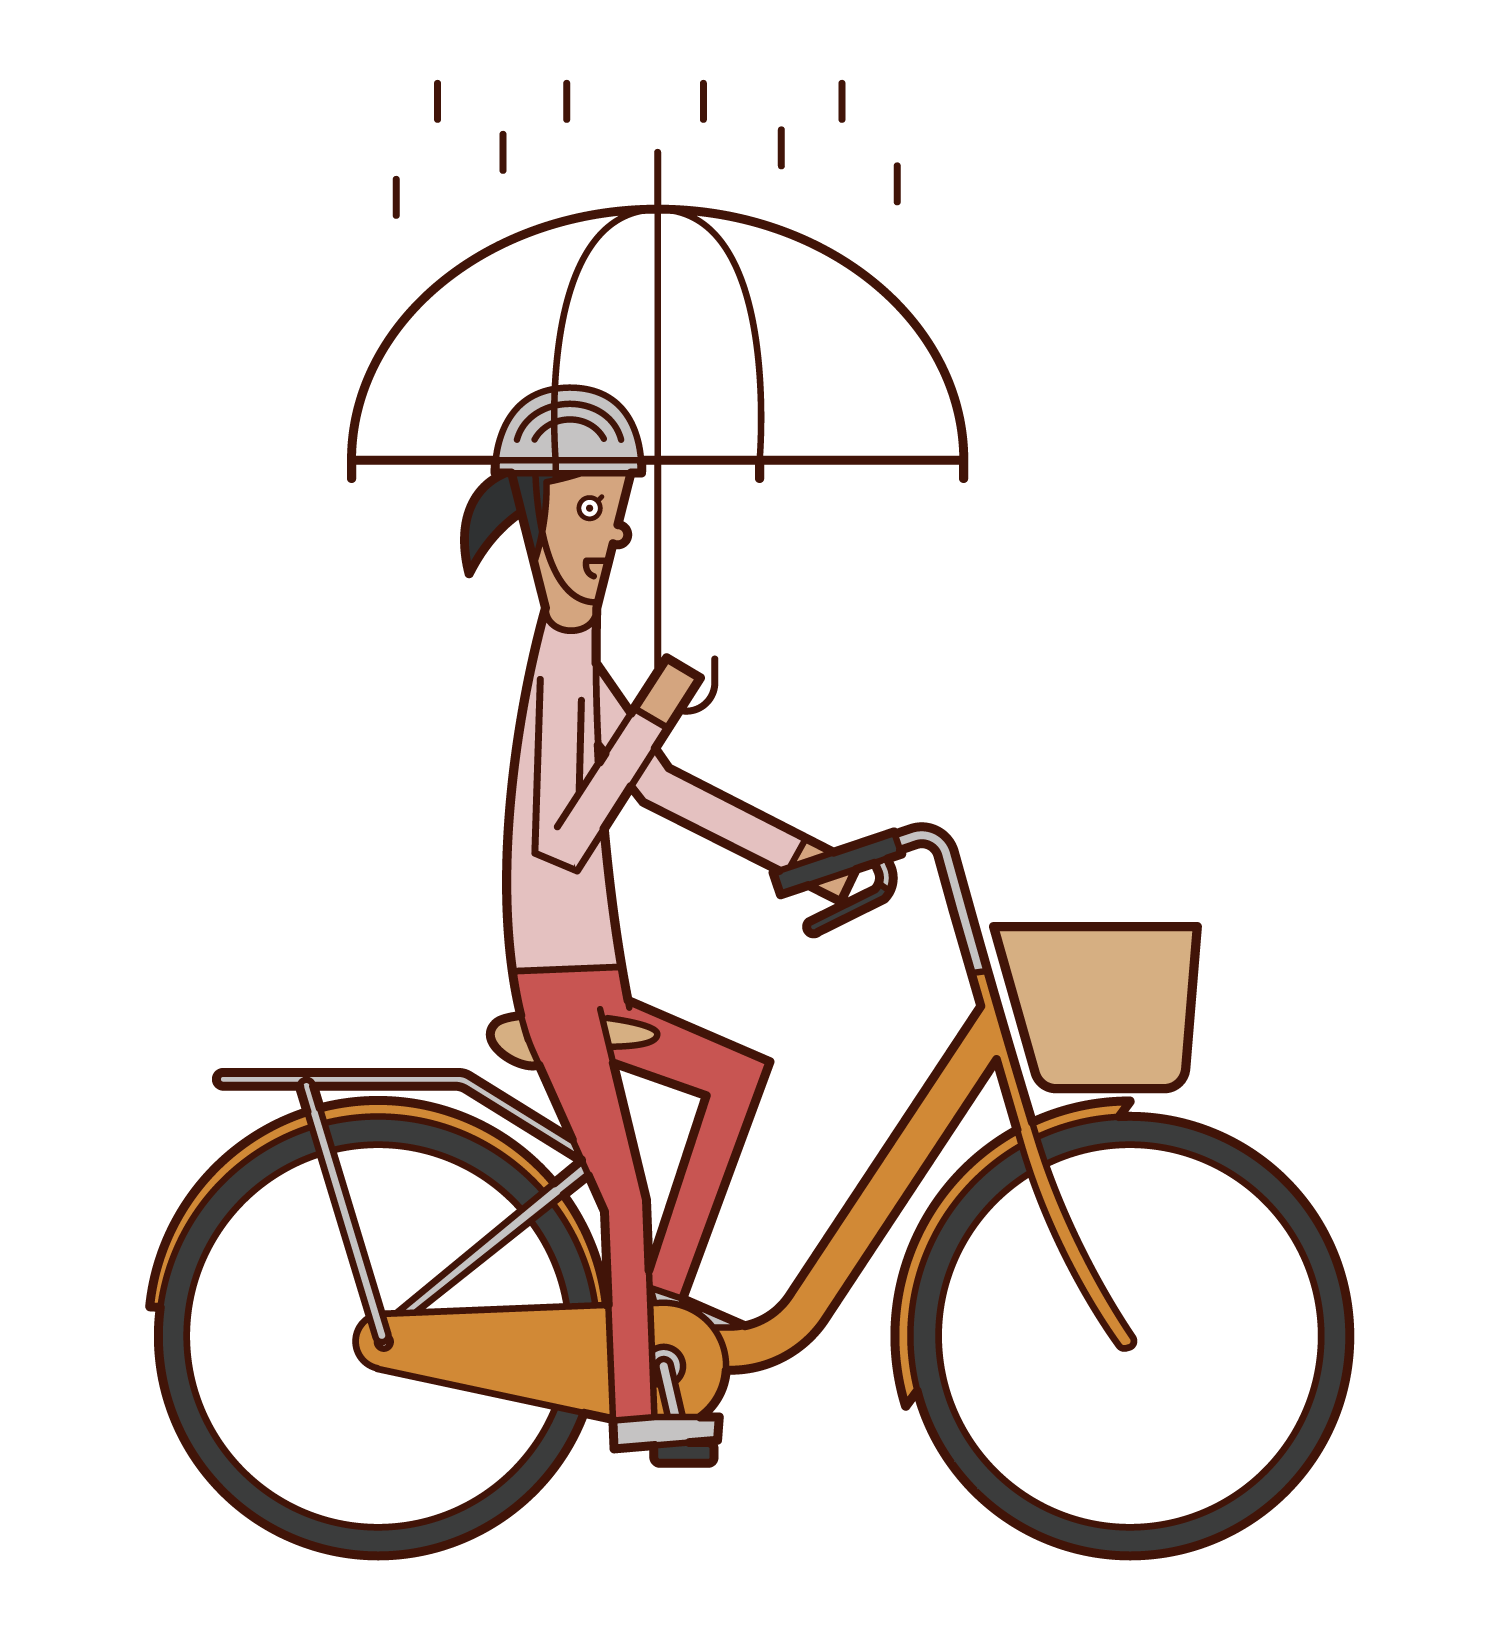 騎自行車的人(女性)的插圖,同時拿著雨傘